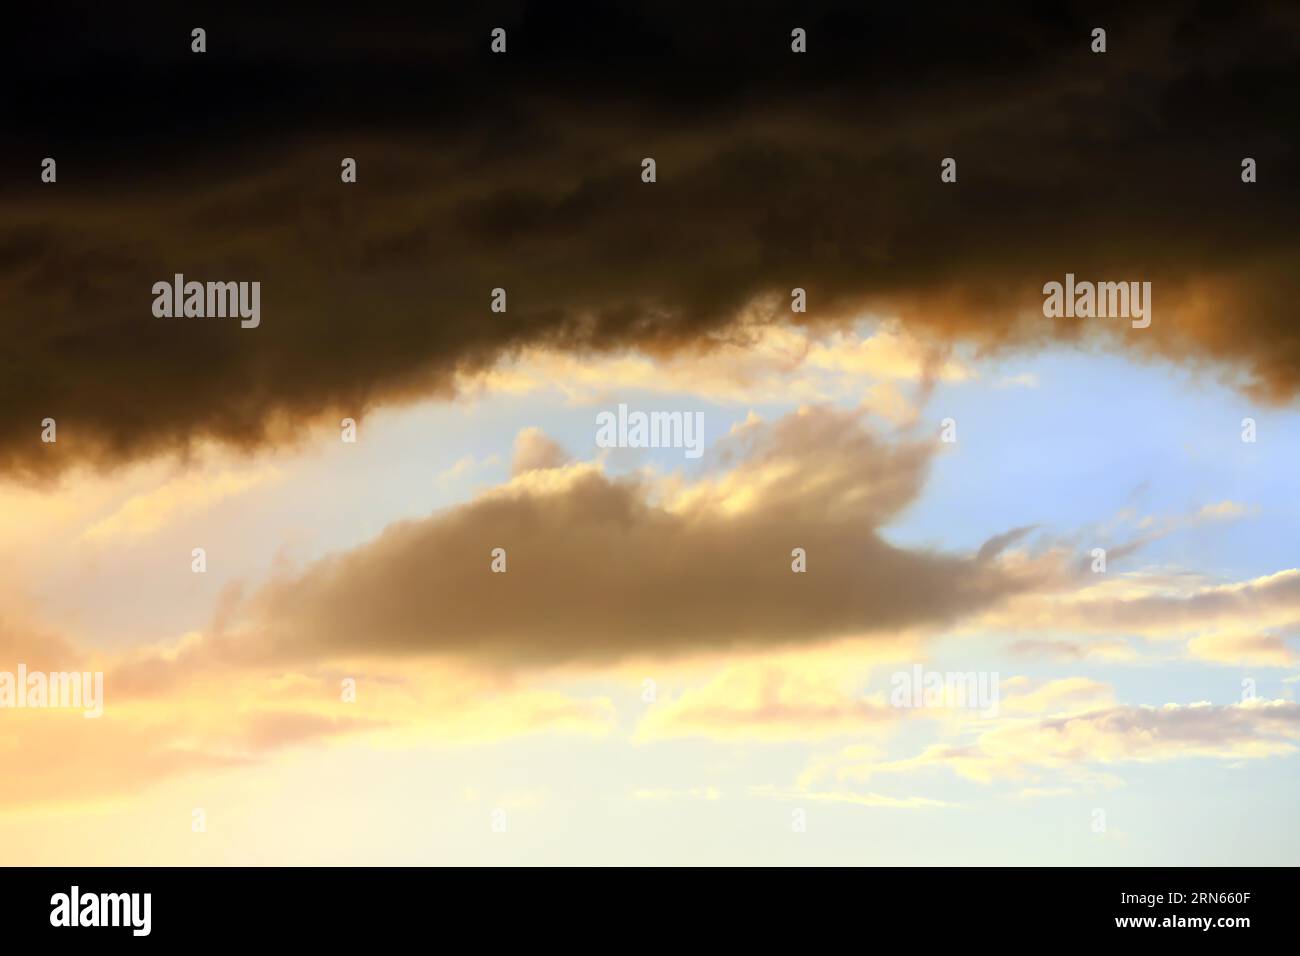 Cielo nuvoloso al tramonto. Il cielo è visibile attraverso uno spazio tra le nuvole. L'immagine trasmette l'atmosfera di una tempesta imminente o di un cattivo tempo Foto Stock